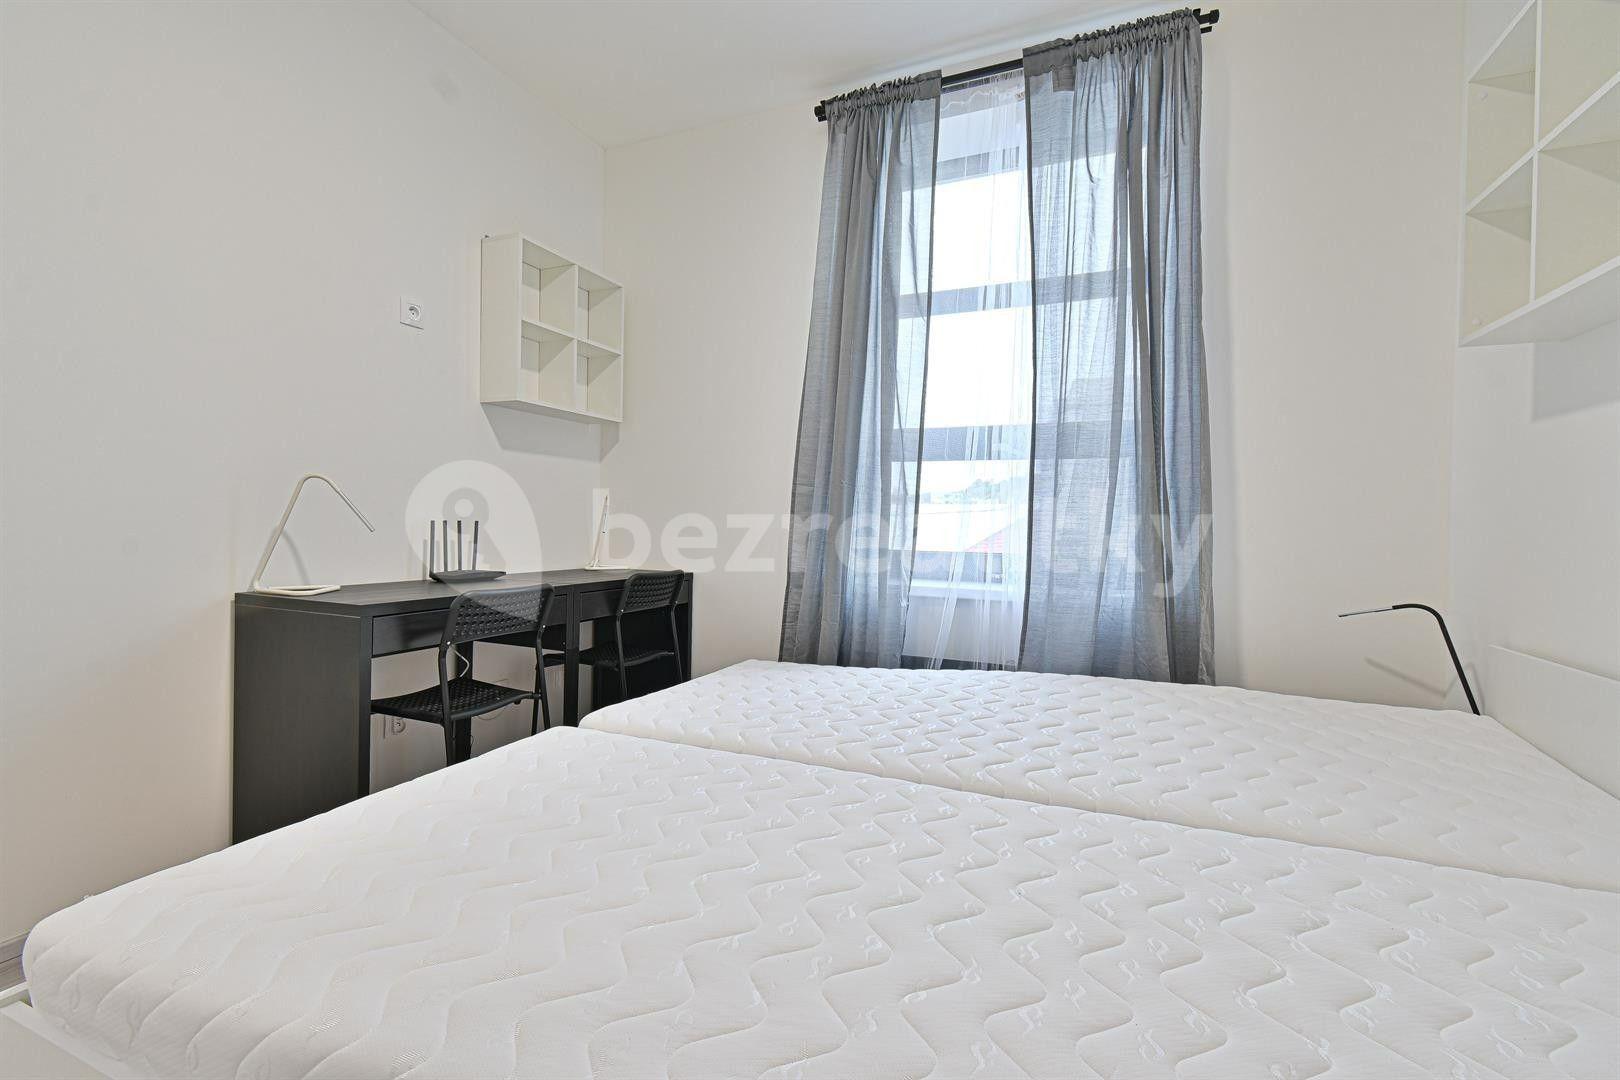 2 bedroom flat to rent, 33 m², Hybešova, Brno, Jihomoravský Region